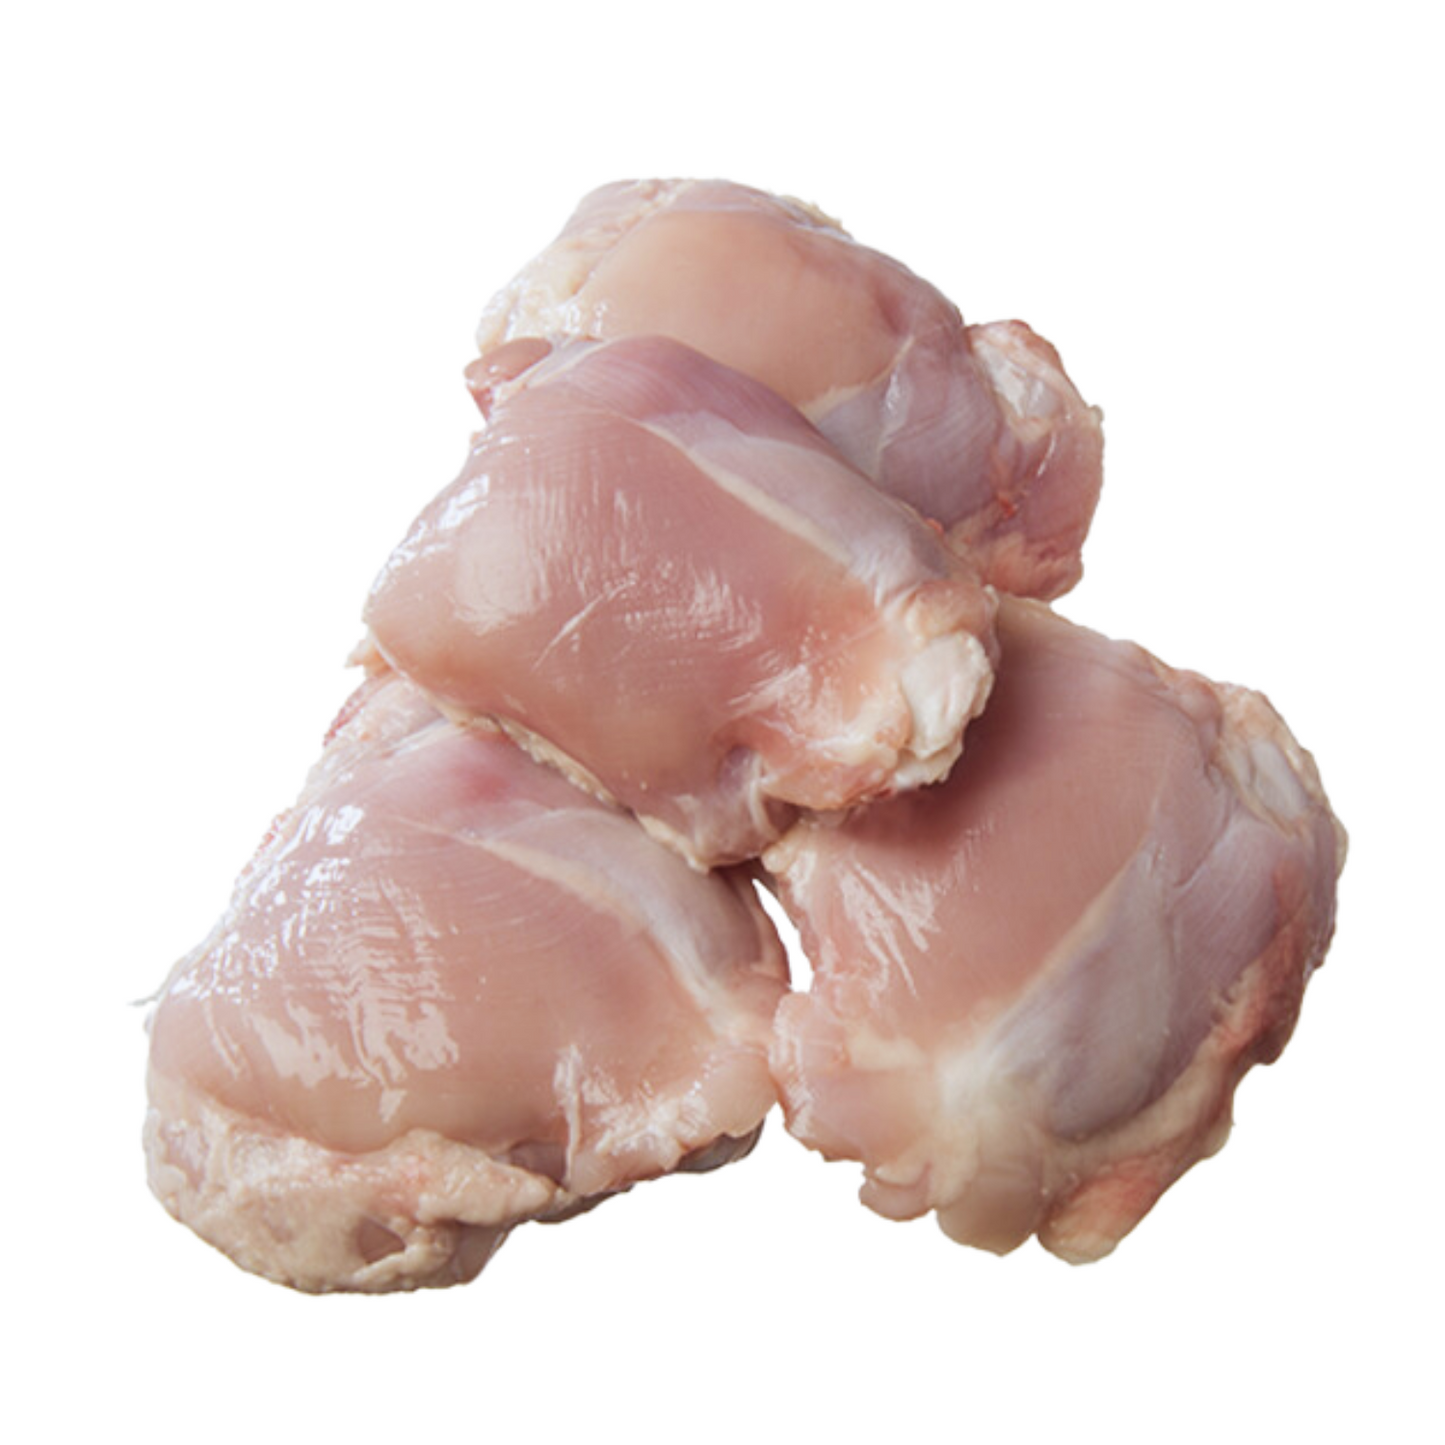 Boneless Chicken Thigh